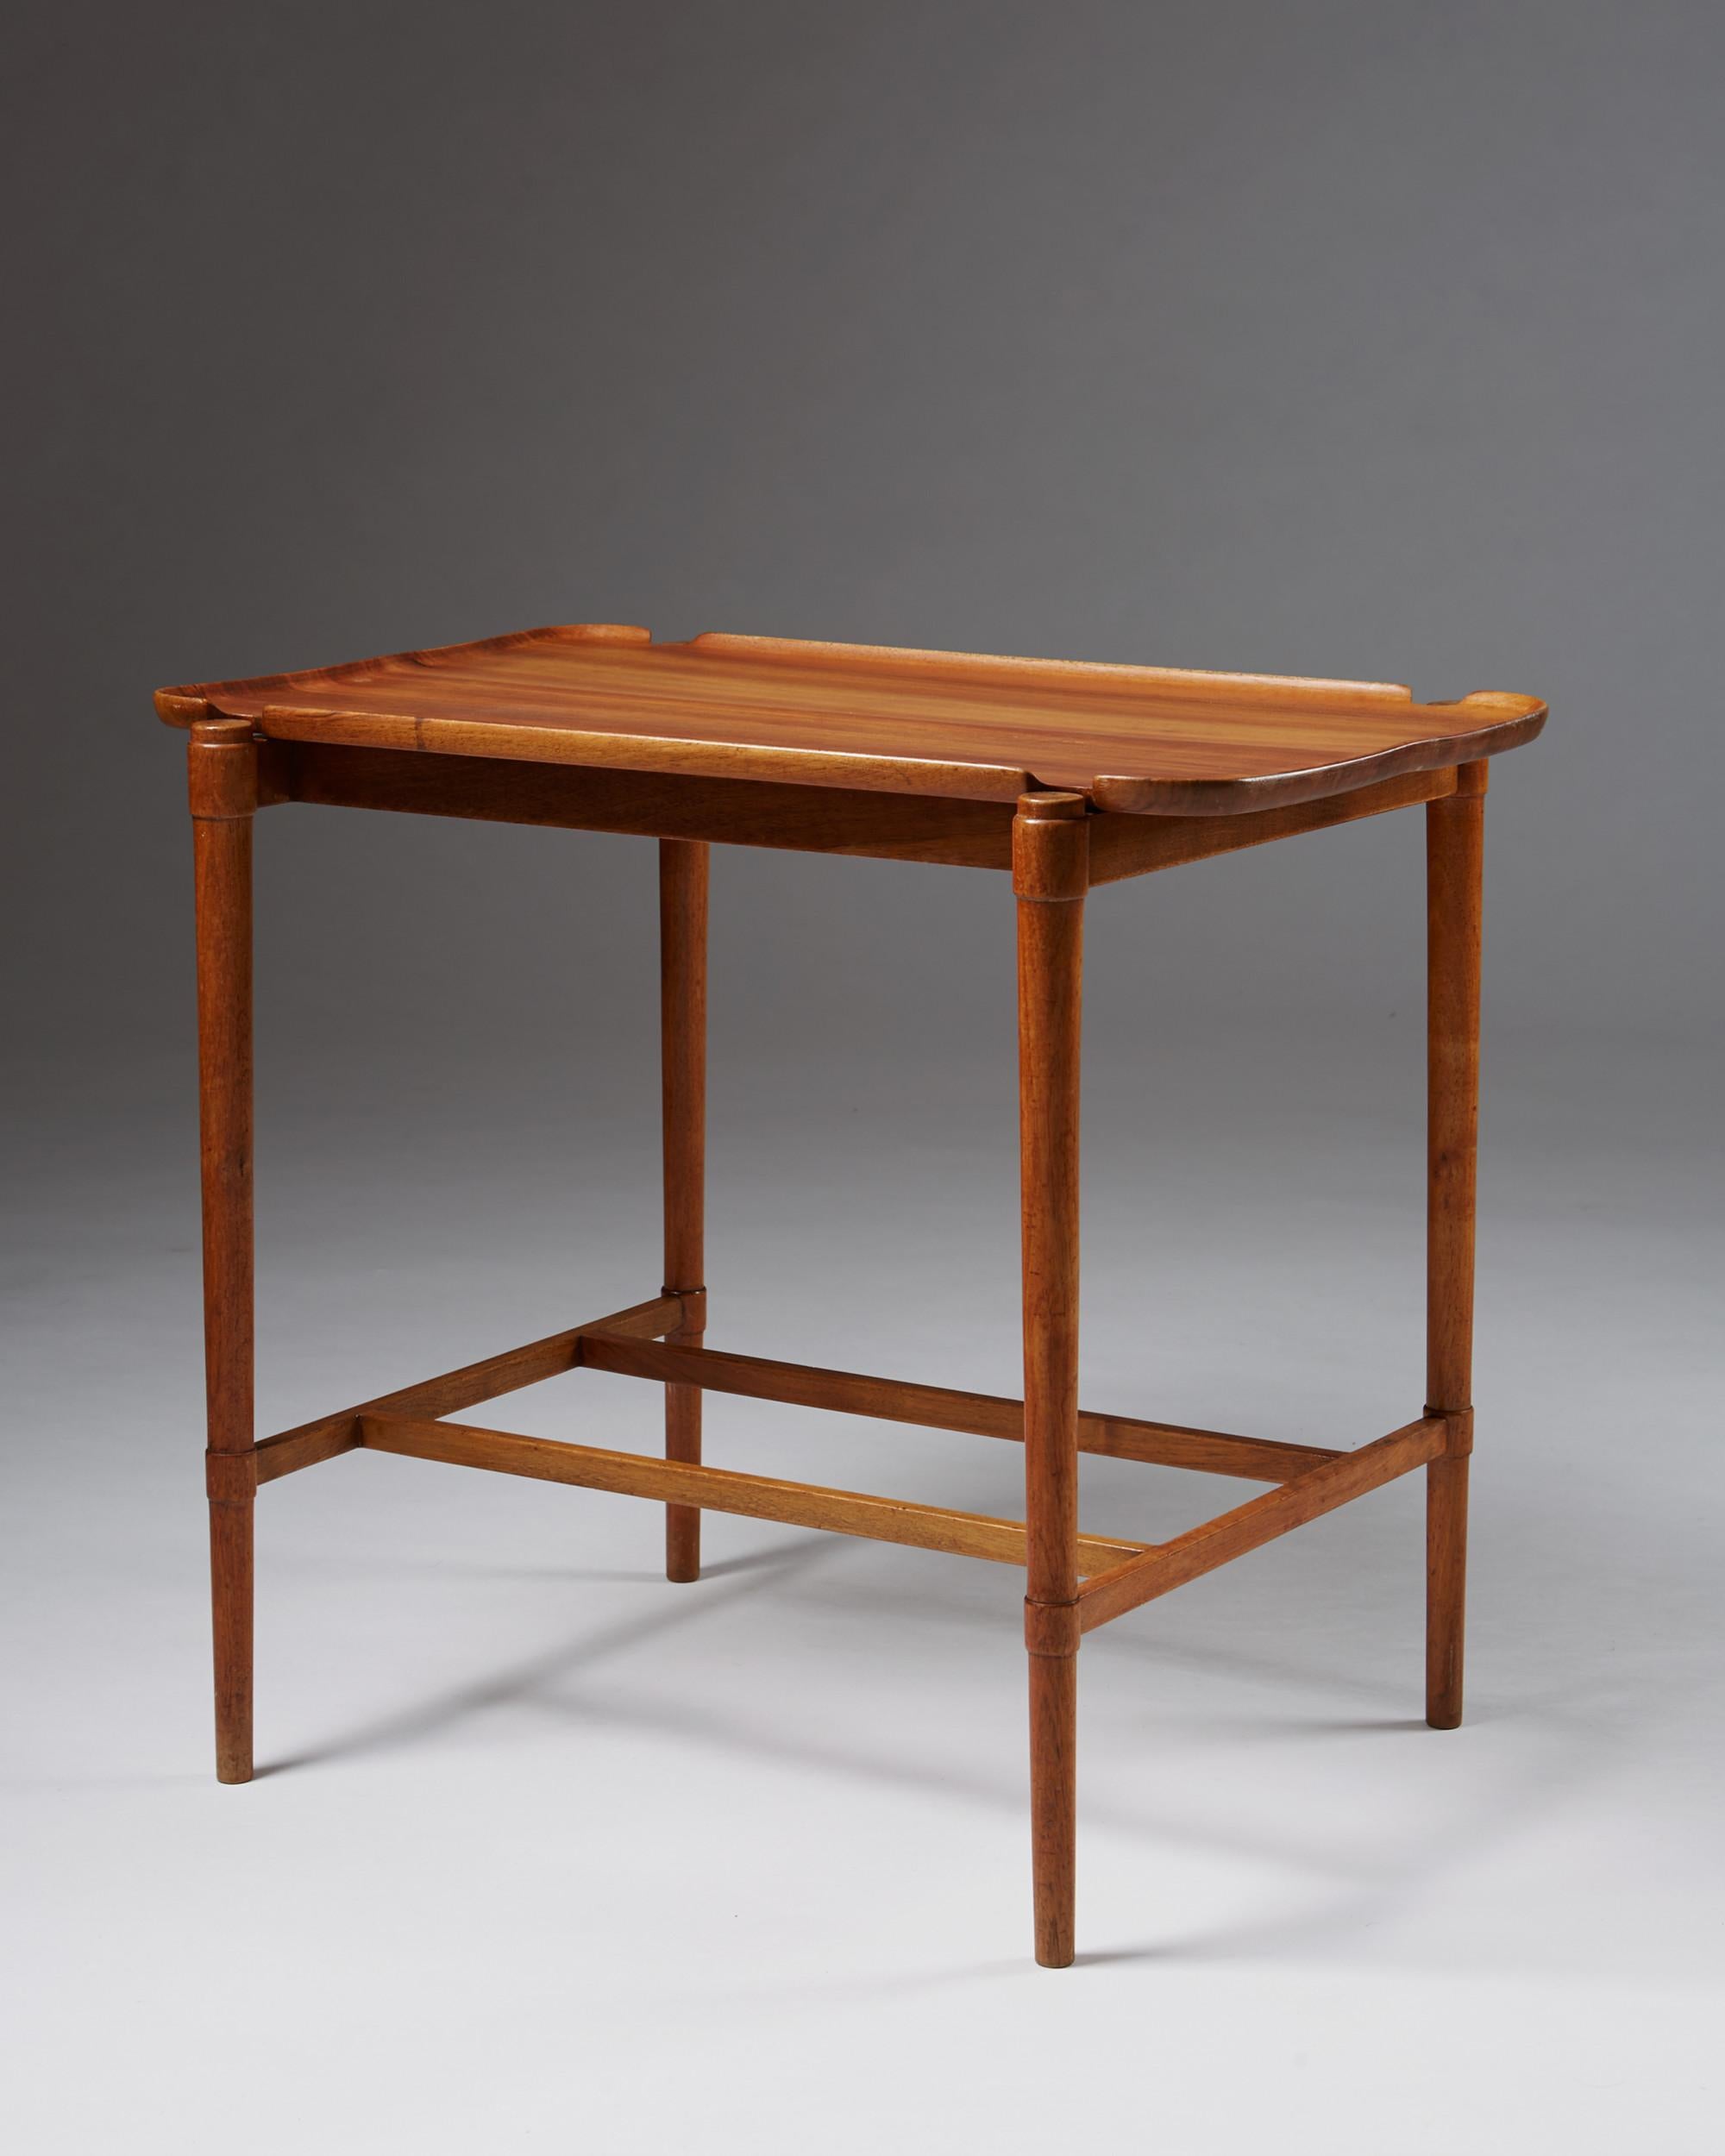 Scandinavian Modern Occasional Table Designed by Peder Hvidt for Fritz Hansen, Denmark, 1943